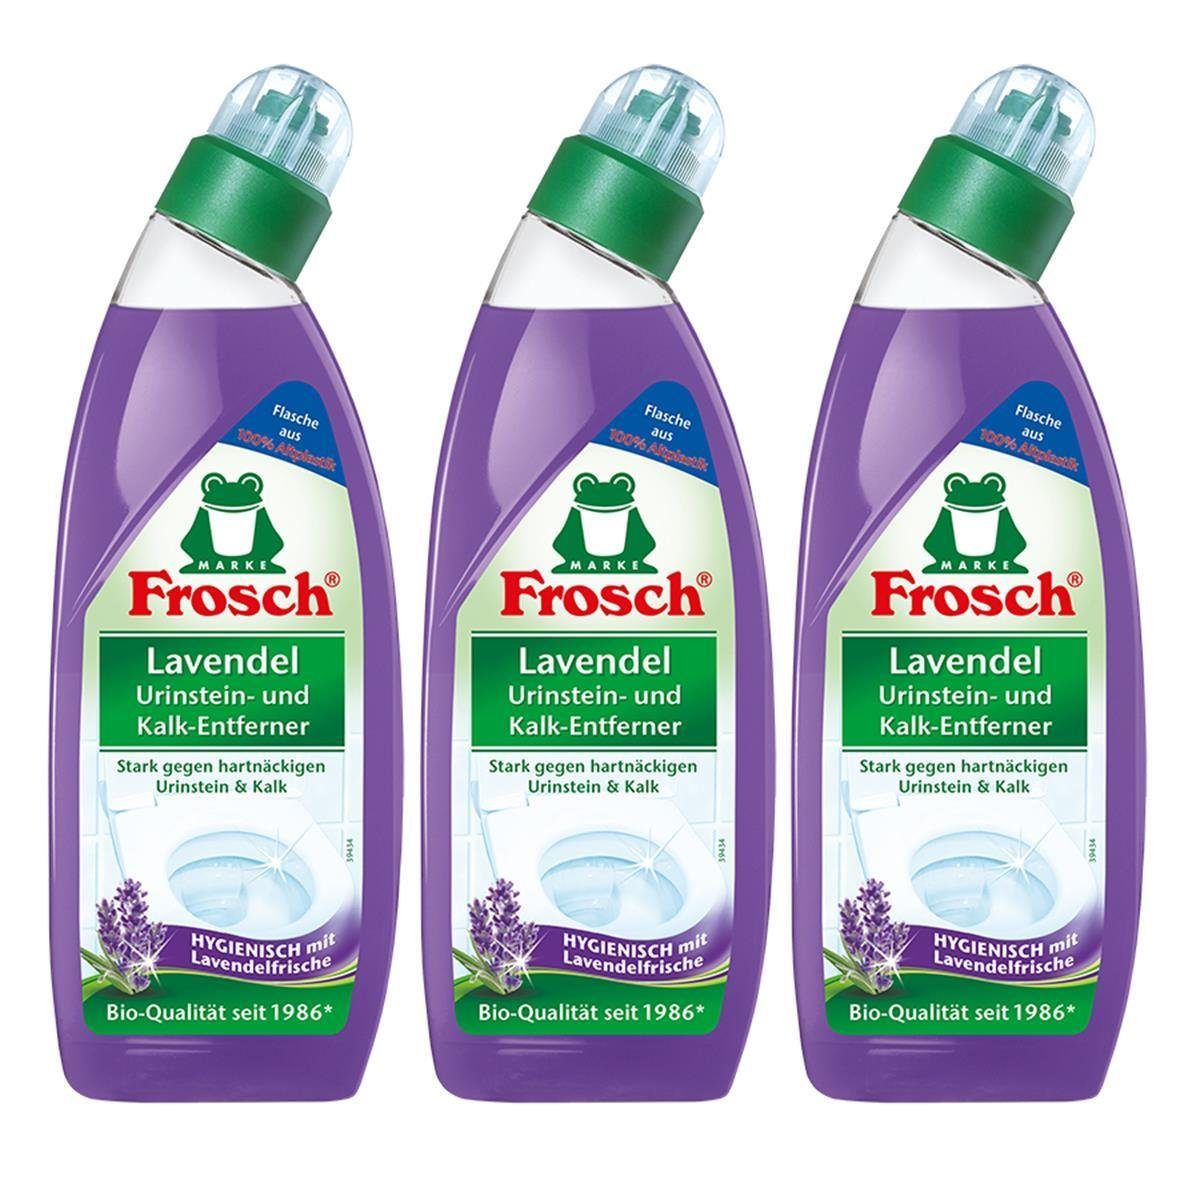 Frosch - Urinstein- FROSCH m 750 und WC-Reiniger Hygienisch Lavendel 3x ml Kalk-Entferner